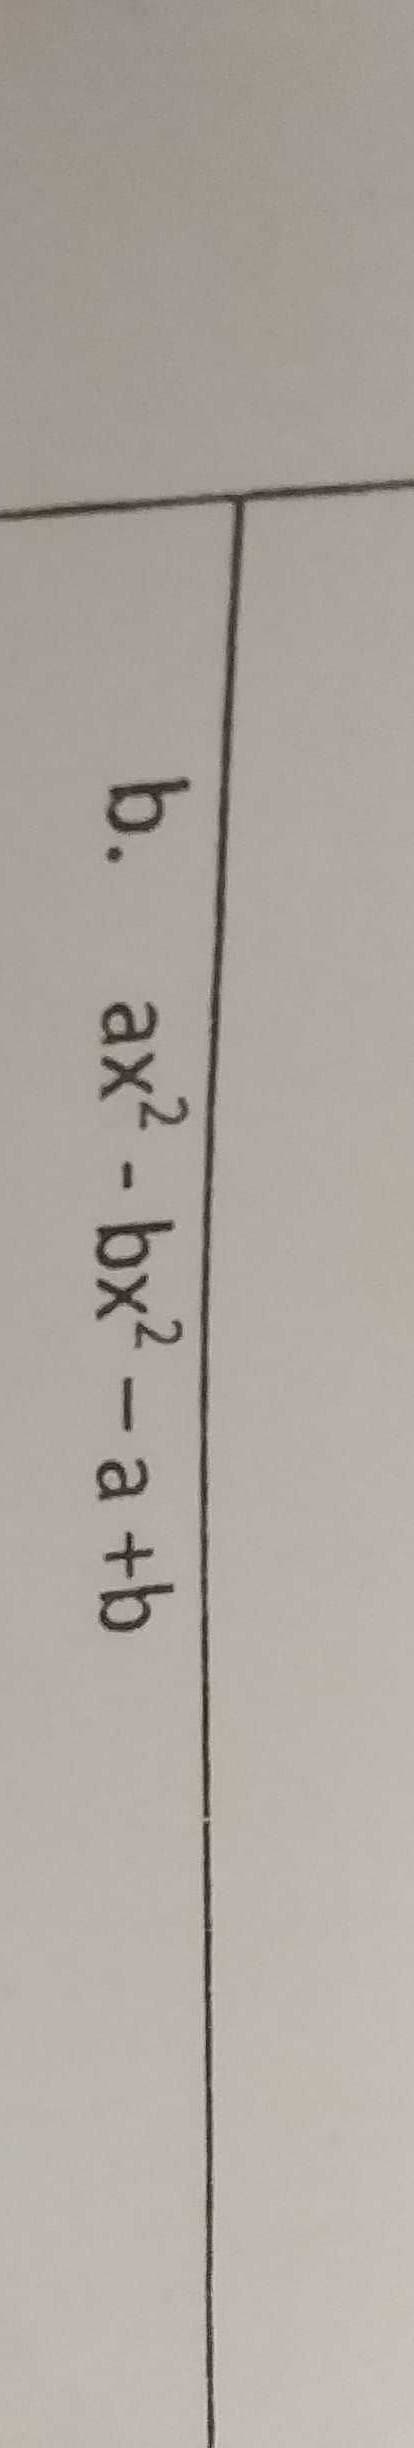 b.
ax? - bx² – a +b
